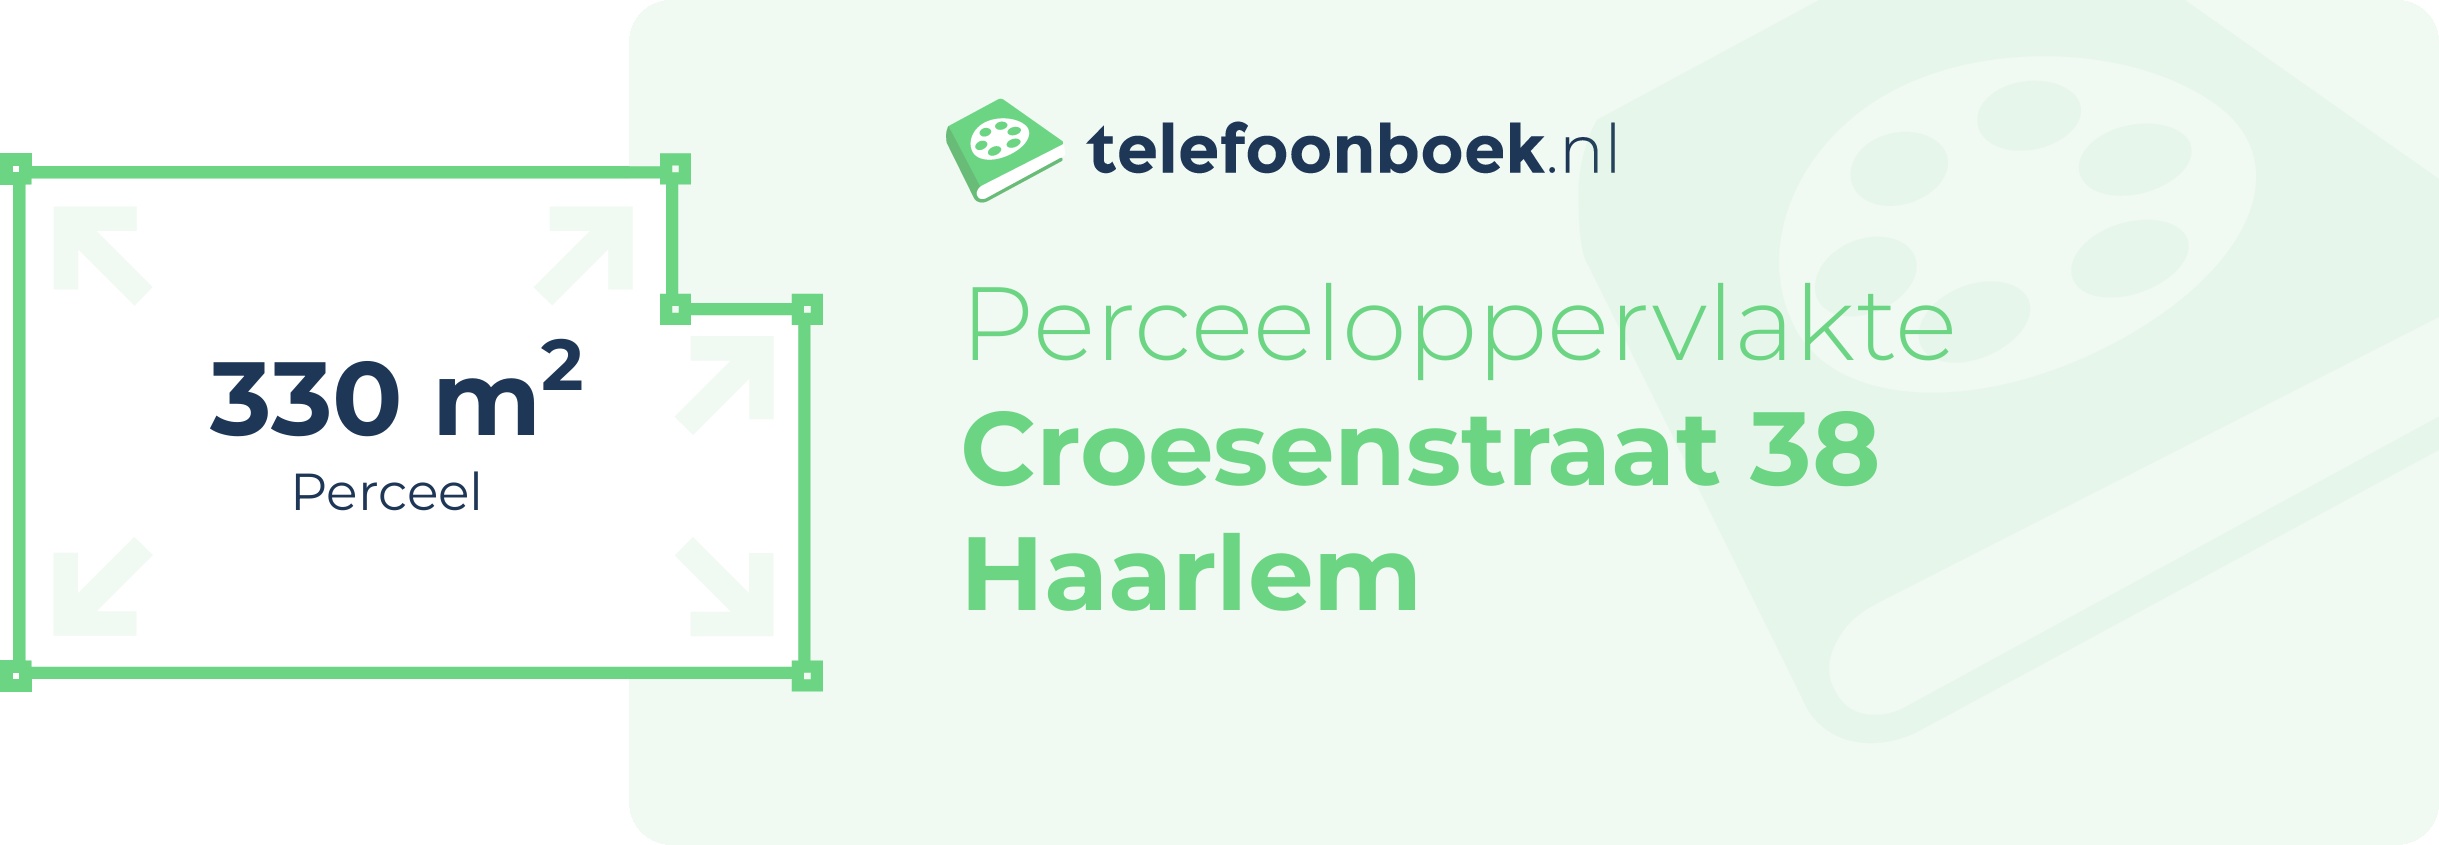 Perceeloppervlakte Croesenstraat 38 Haarlem